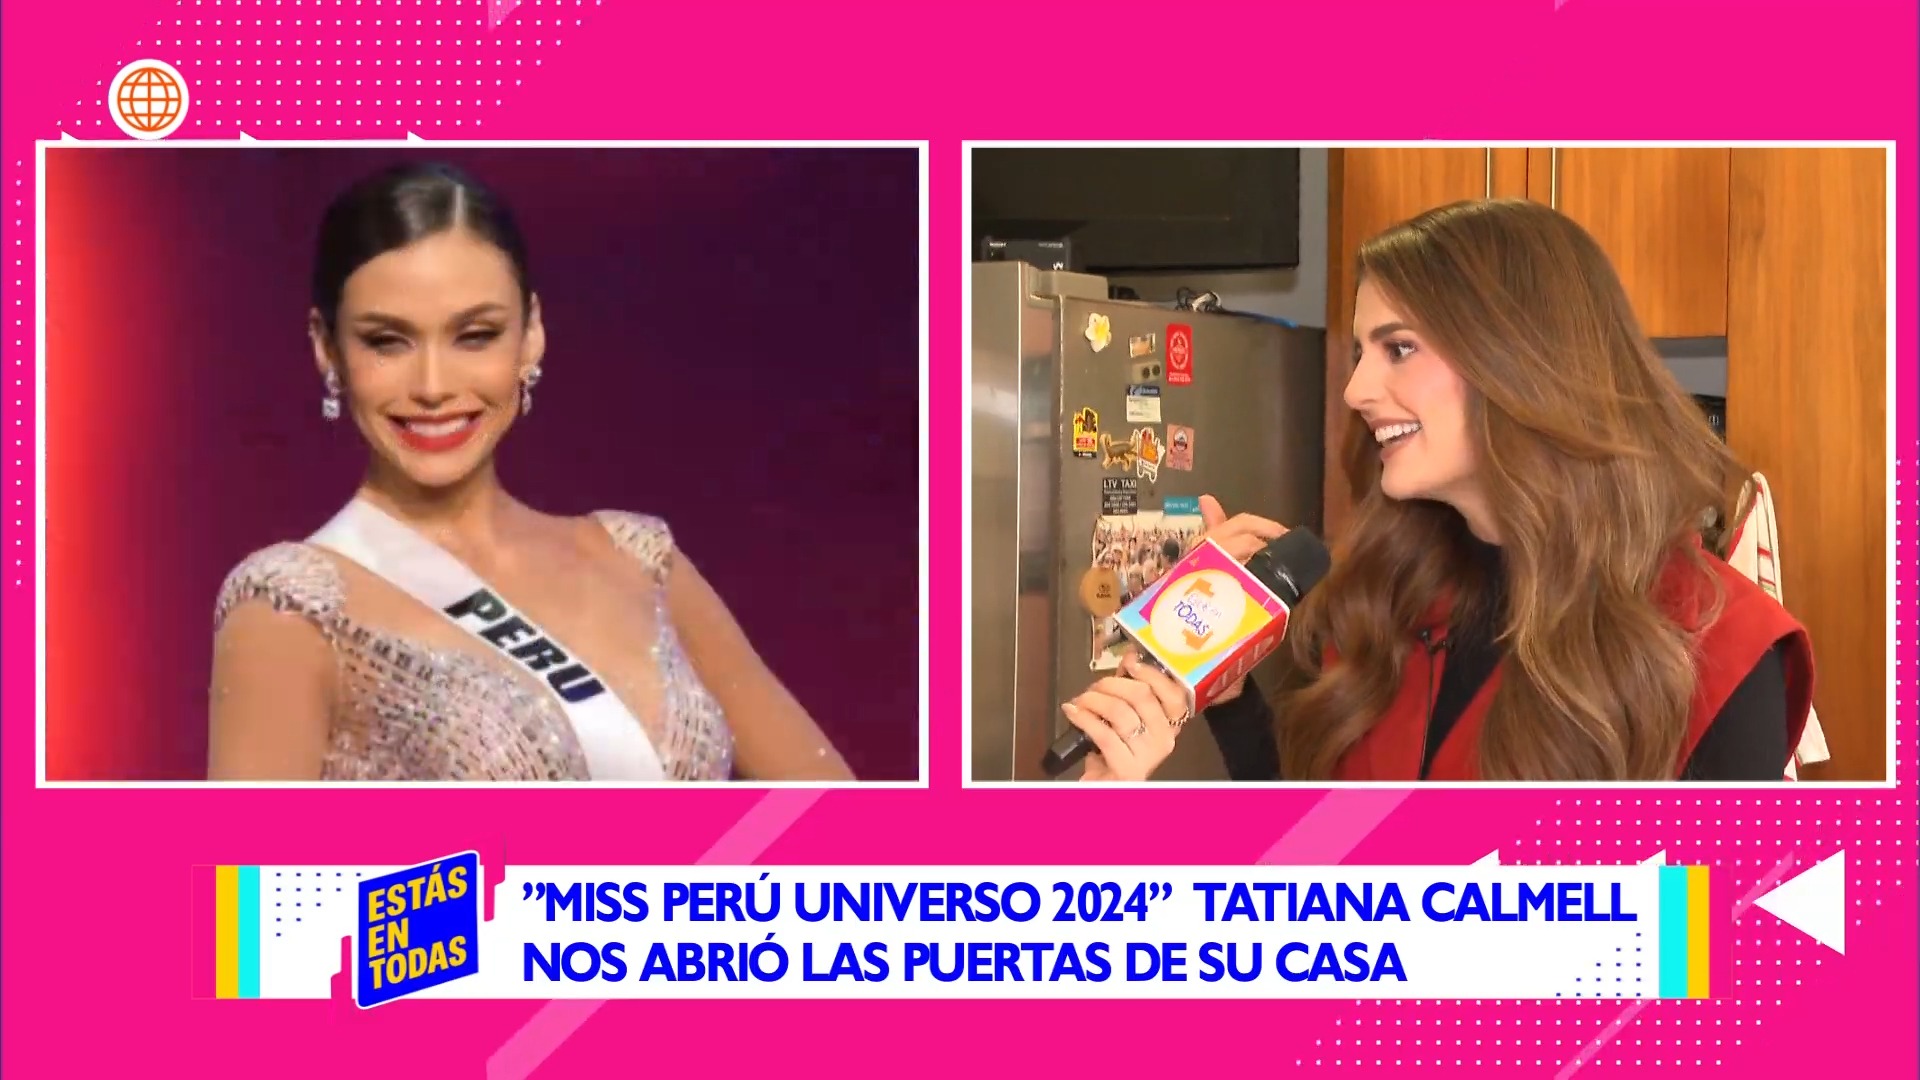 Tatiana Calmell aseguró que su novio la motivó a participar en Miss Perú tras ver a Janick Maceta en Miss Universo 2021. Fuente: AméricaTV